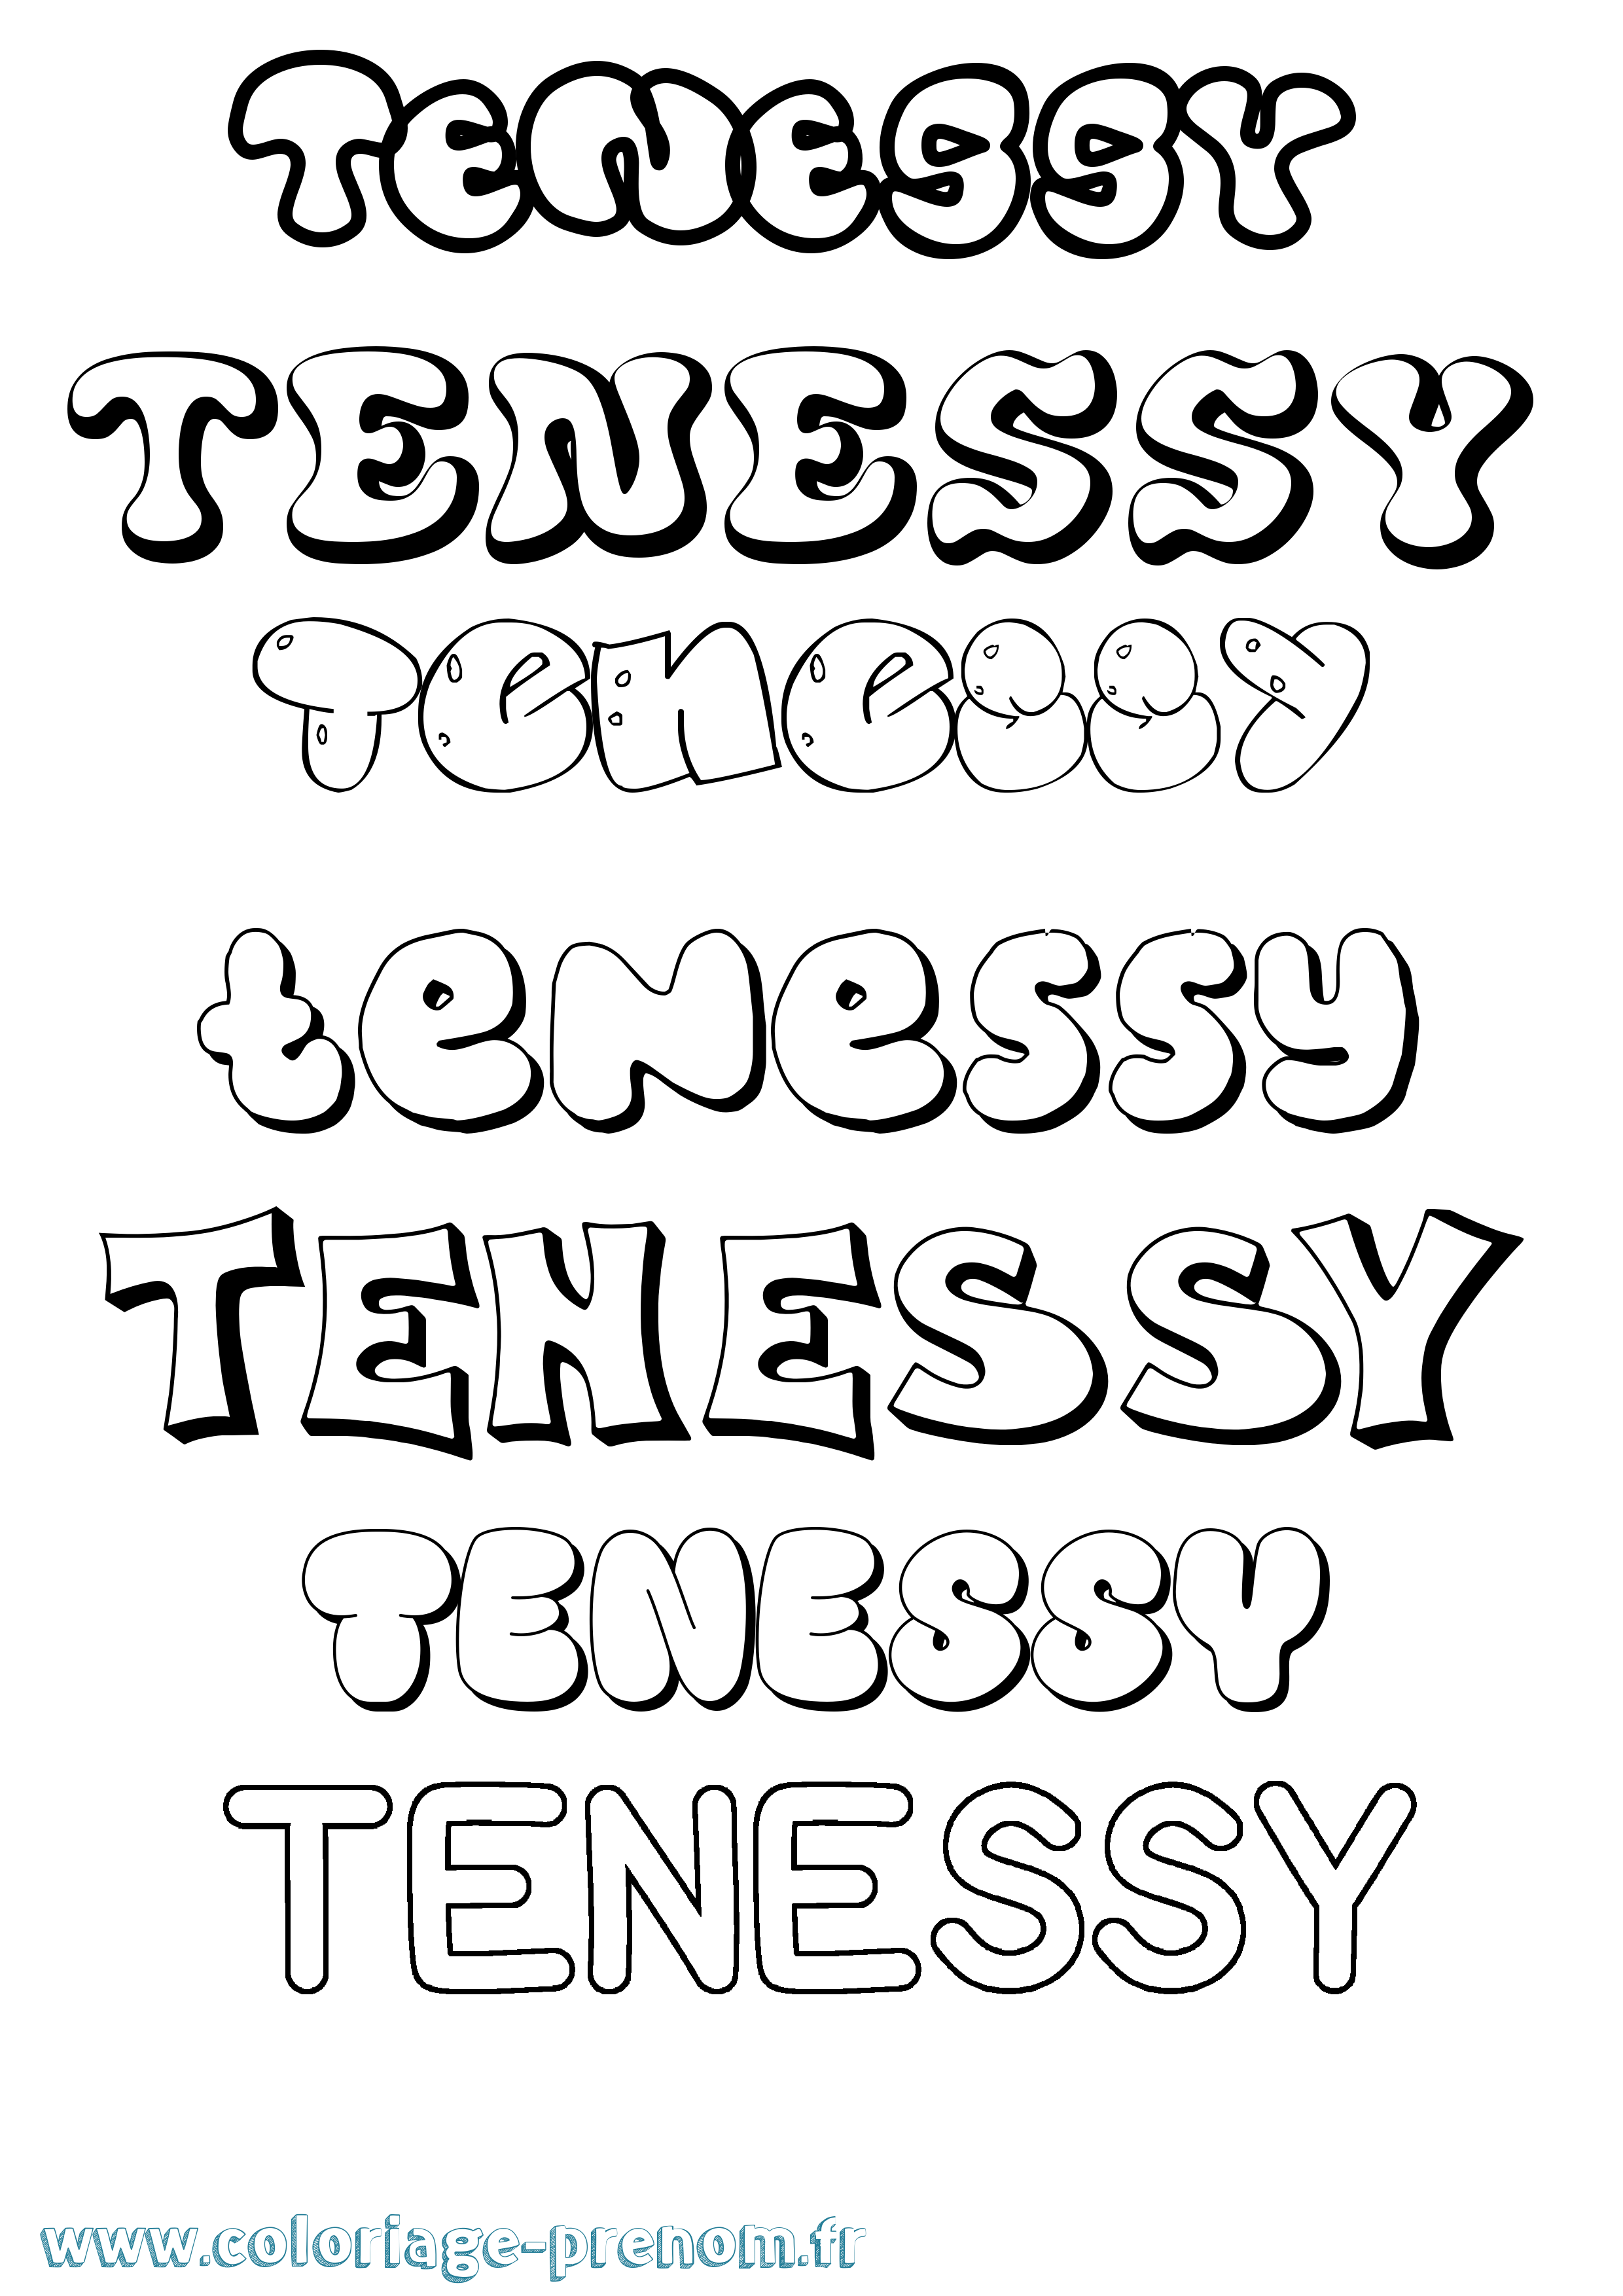 Coloriage prénom Tenessy Bubble